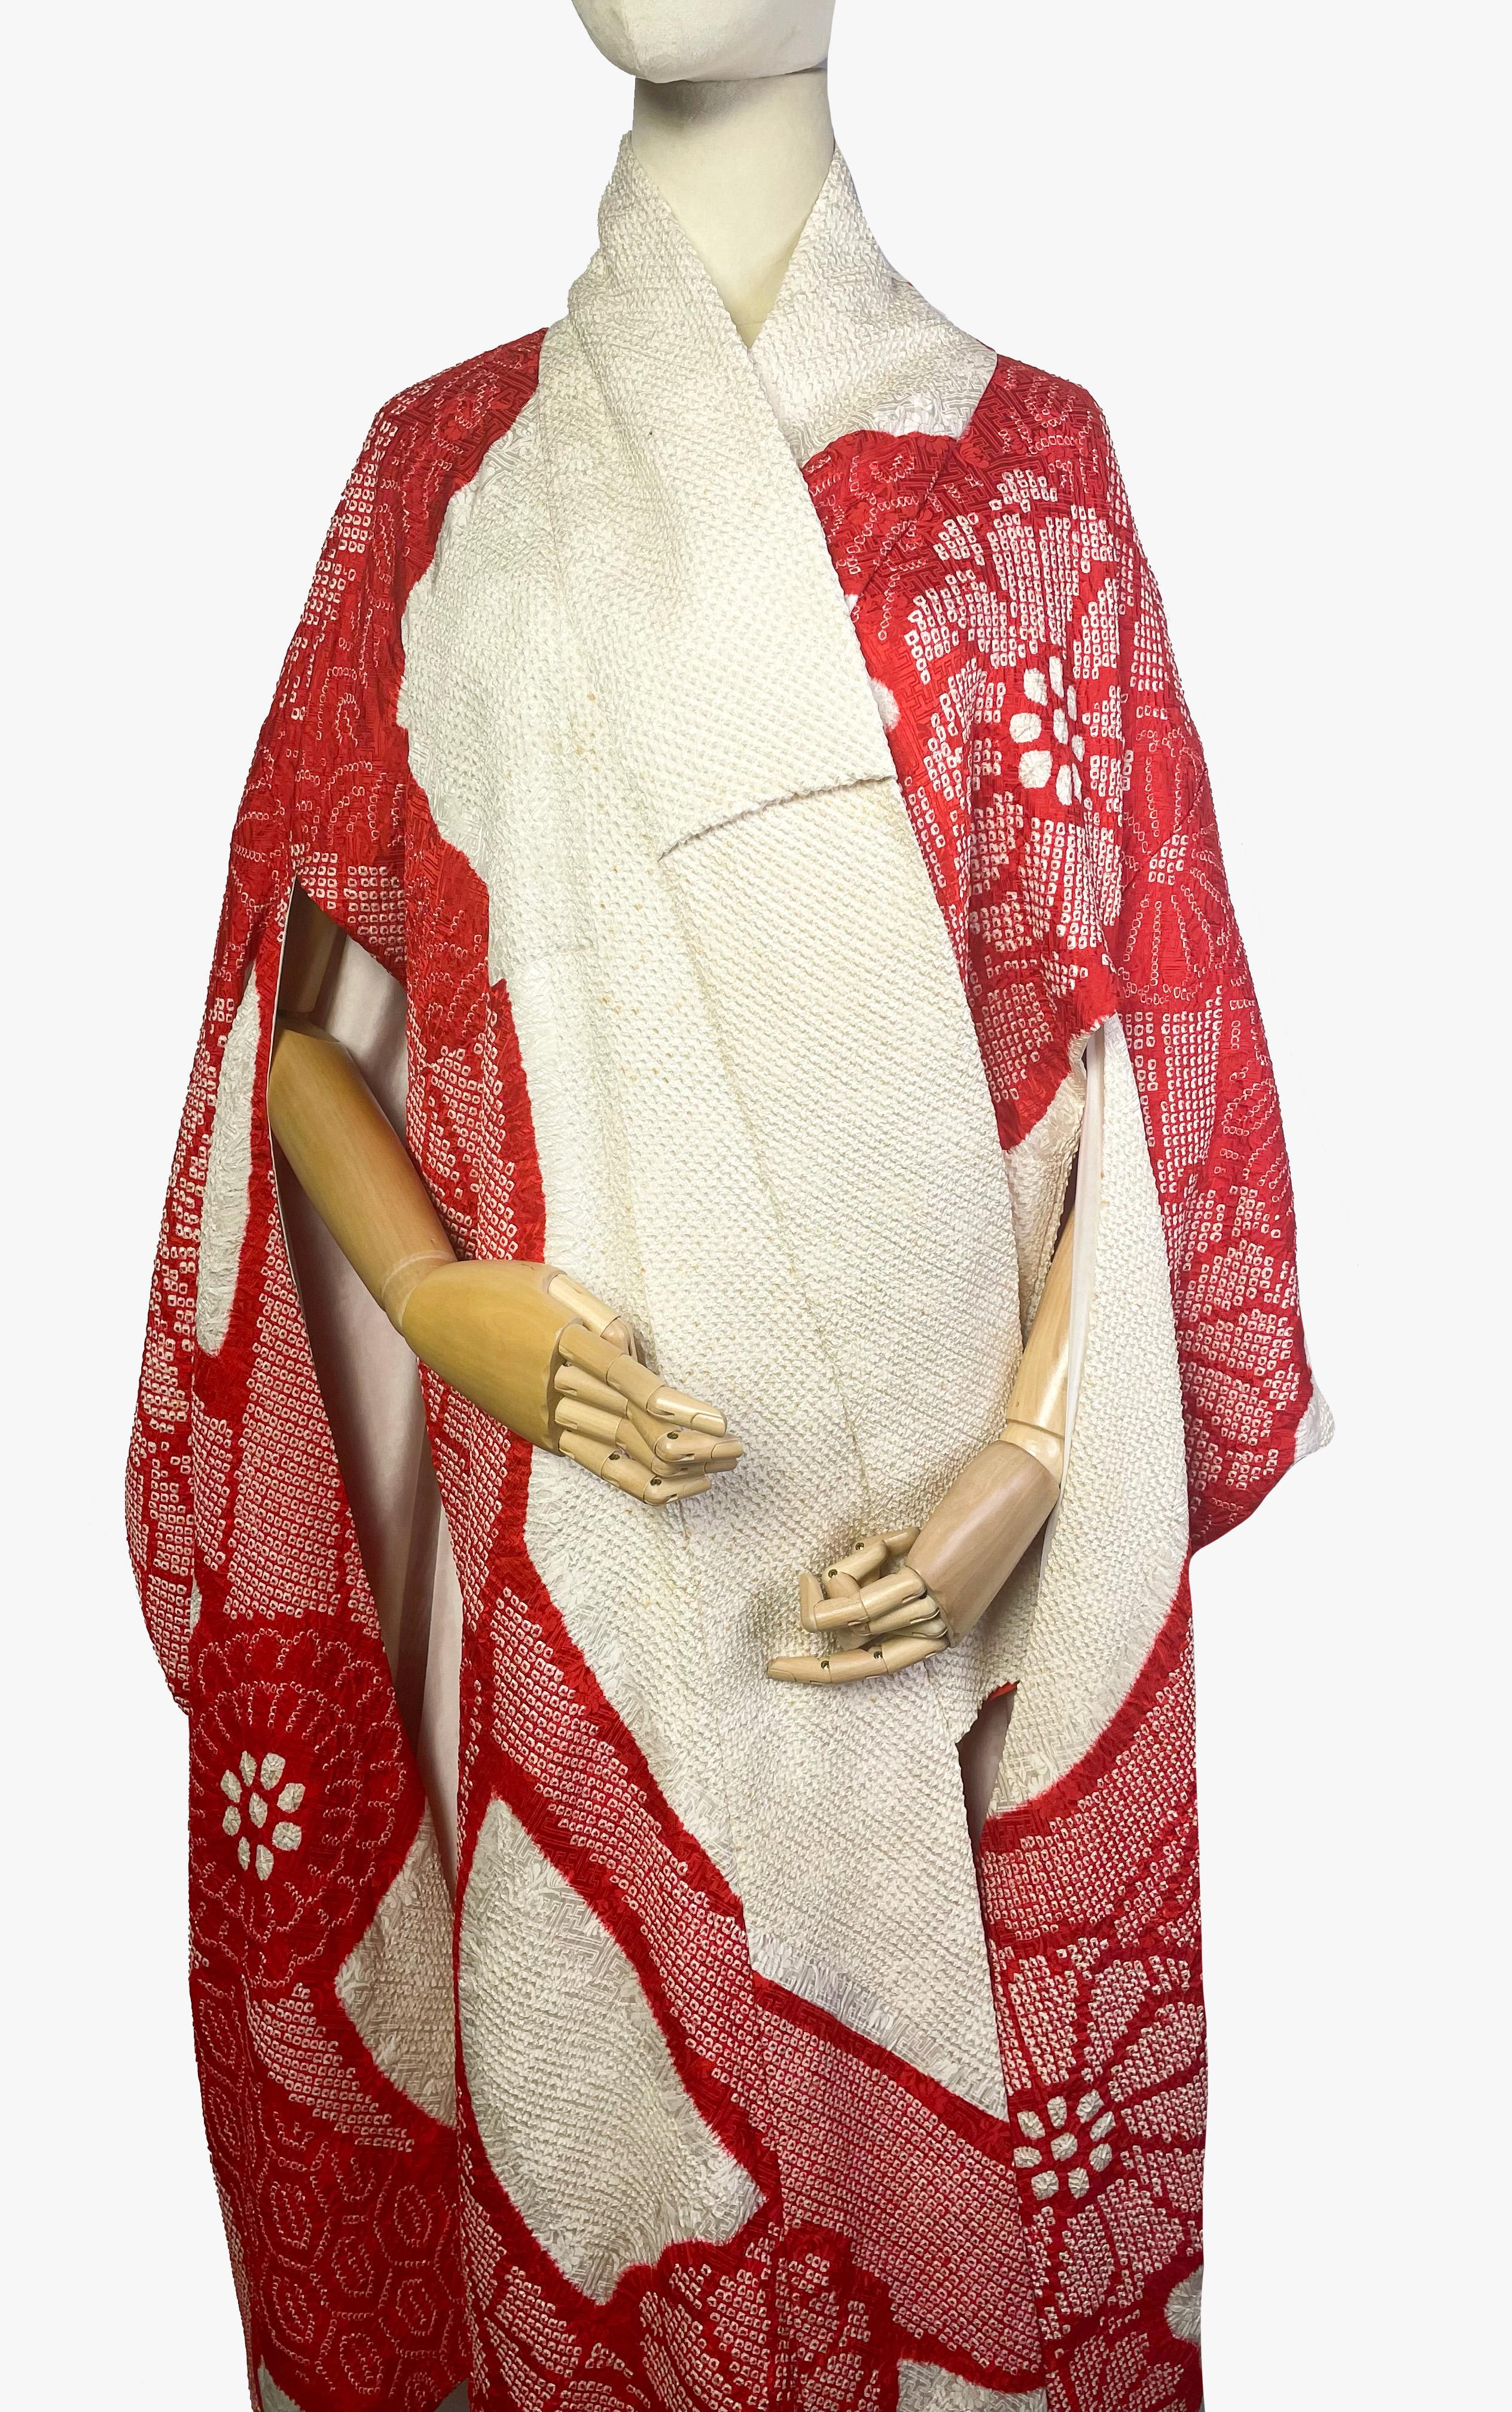 Magnifique kimono de mariage vintage teint à la main selon la technique Kyokanoko-Shibori. 

Dans des tons blancs et rouges ornés d'un motif floral. 

Période - années 1970

Tissu - 100% soie

Condit - très bon, il y a de petites zones